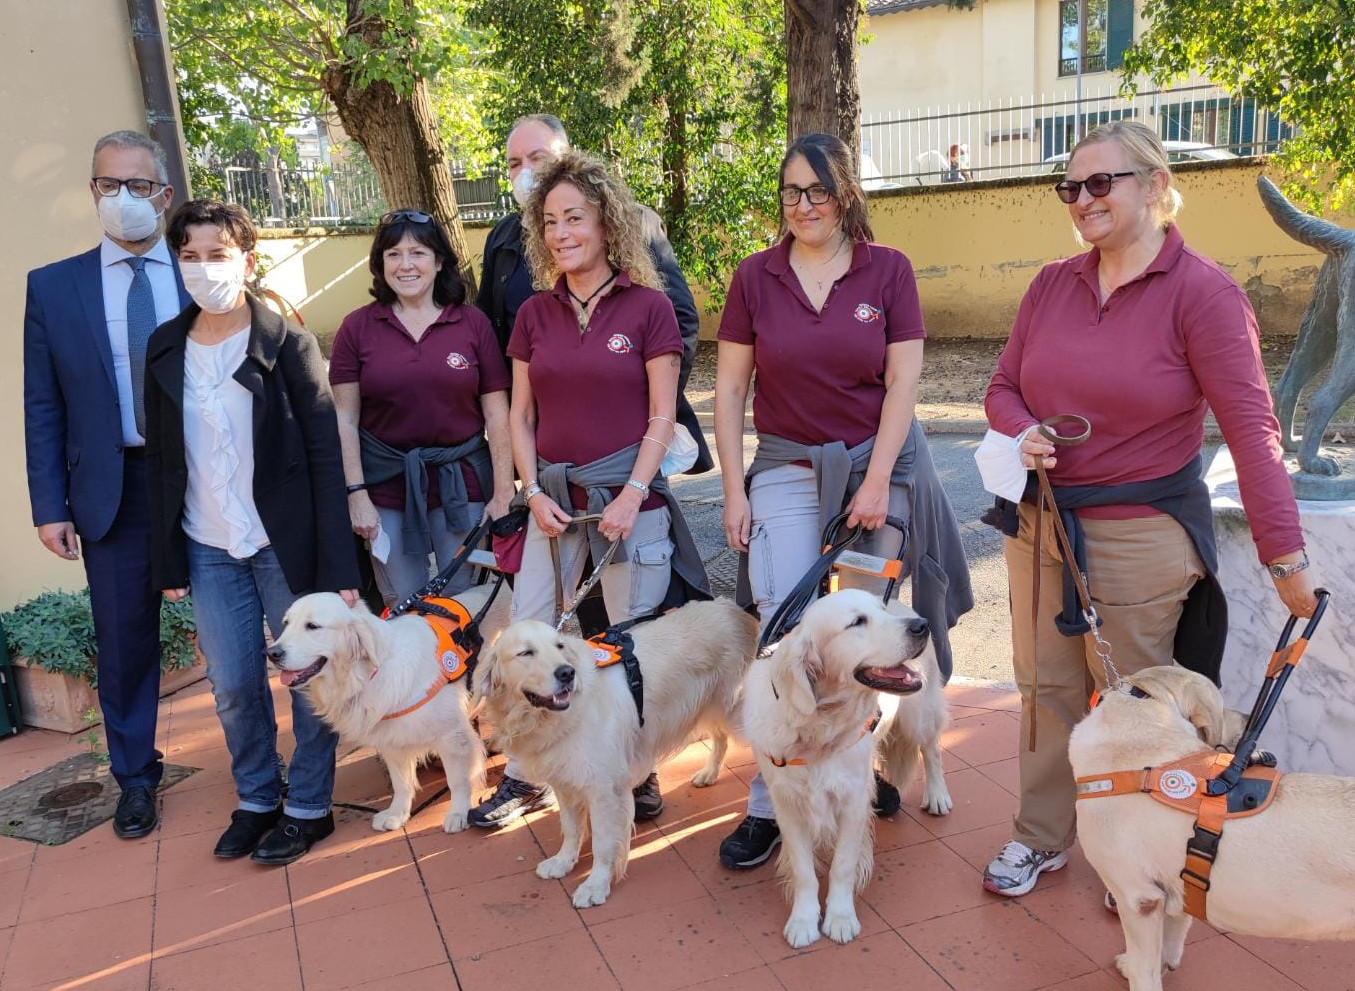 Scuola nazionale cani guida, open day per conoscere le attività di un'eccellenza toscana